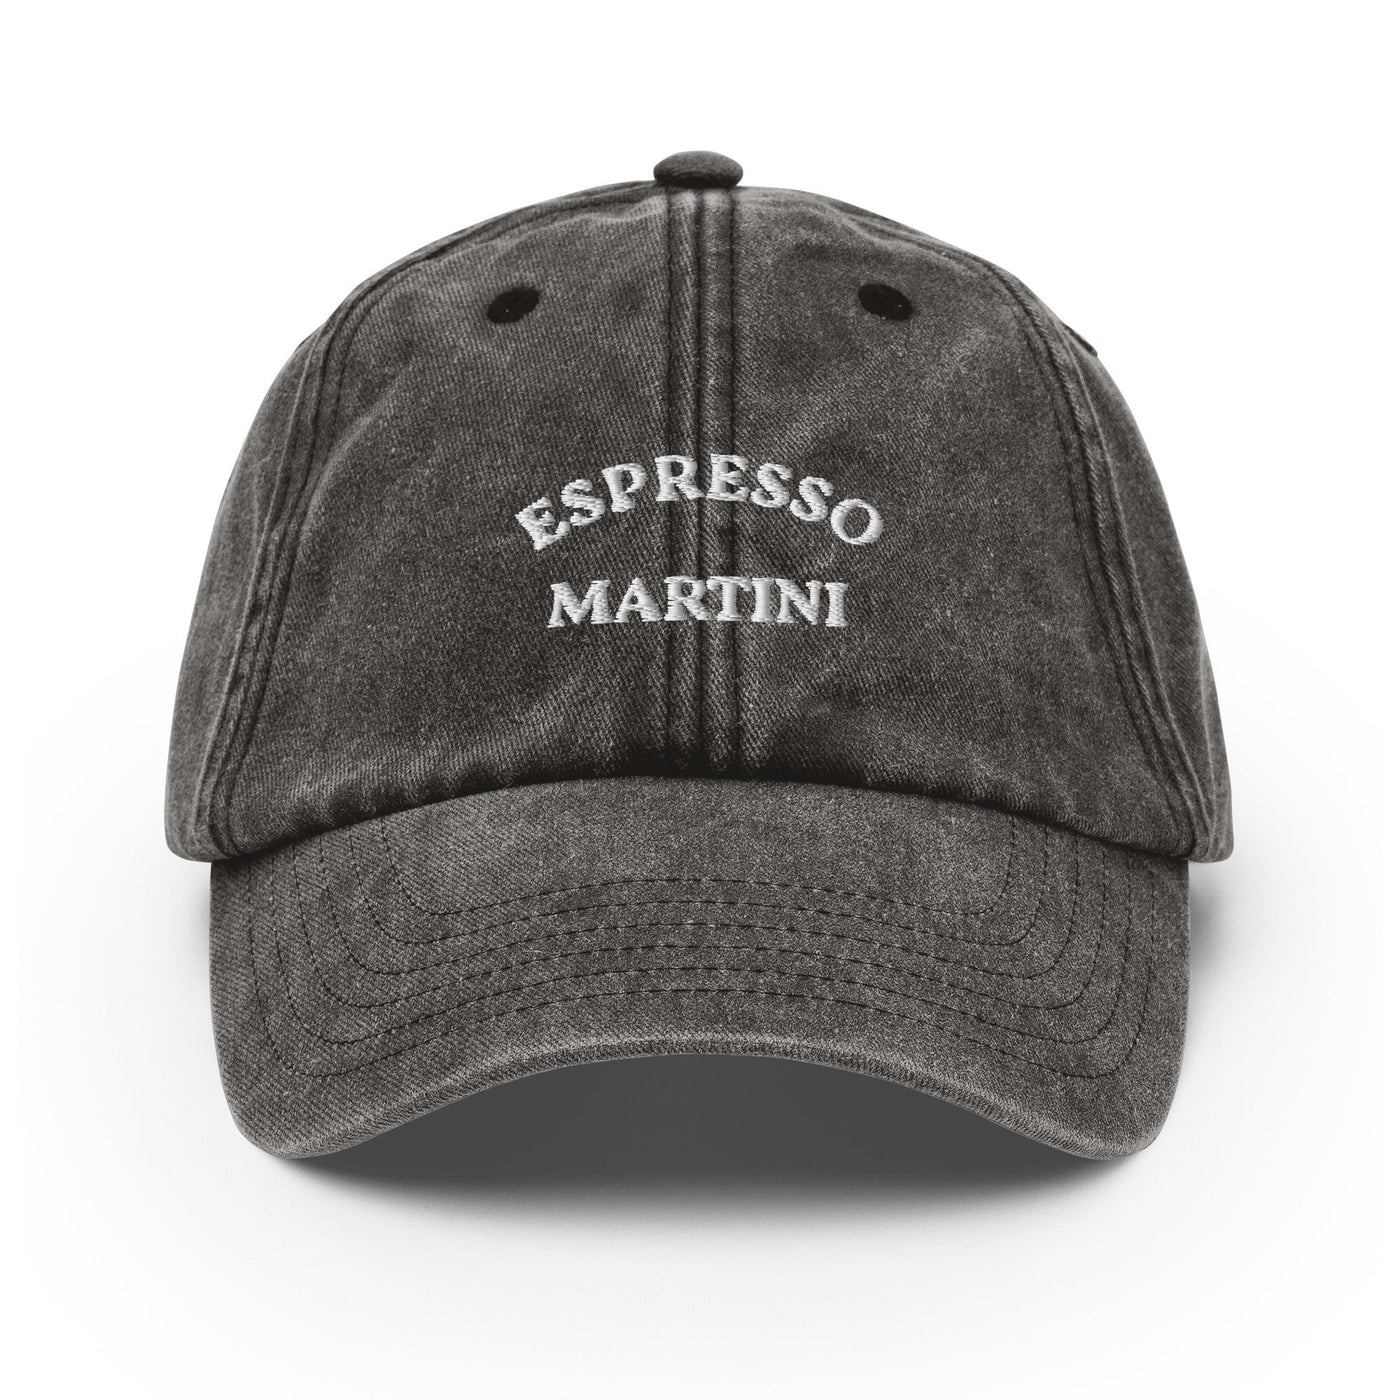 Espresso Martini - Embroidered Vintage Cap